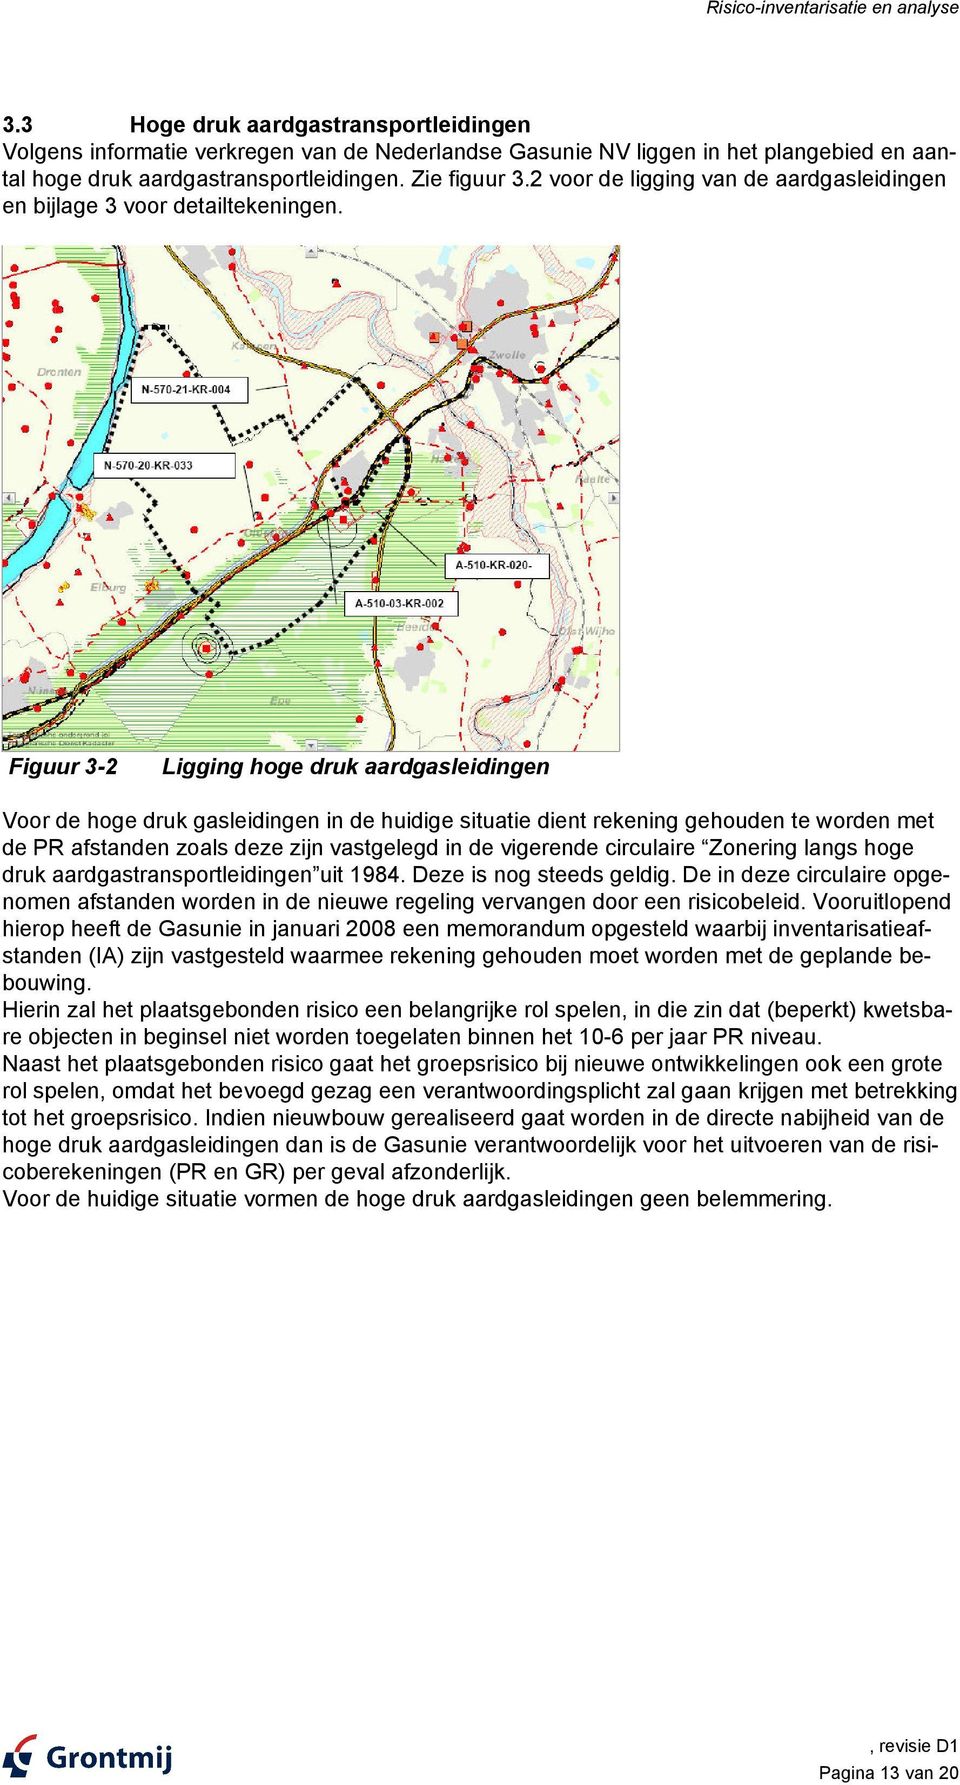 2 voor de ligging van de aardgasleidingen en bijlage 3 voor detailtekeningen.